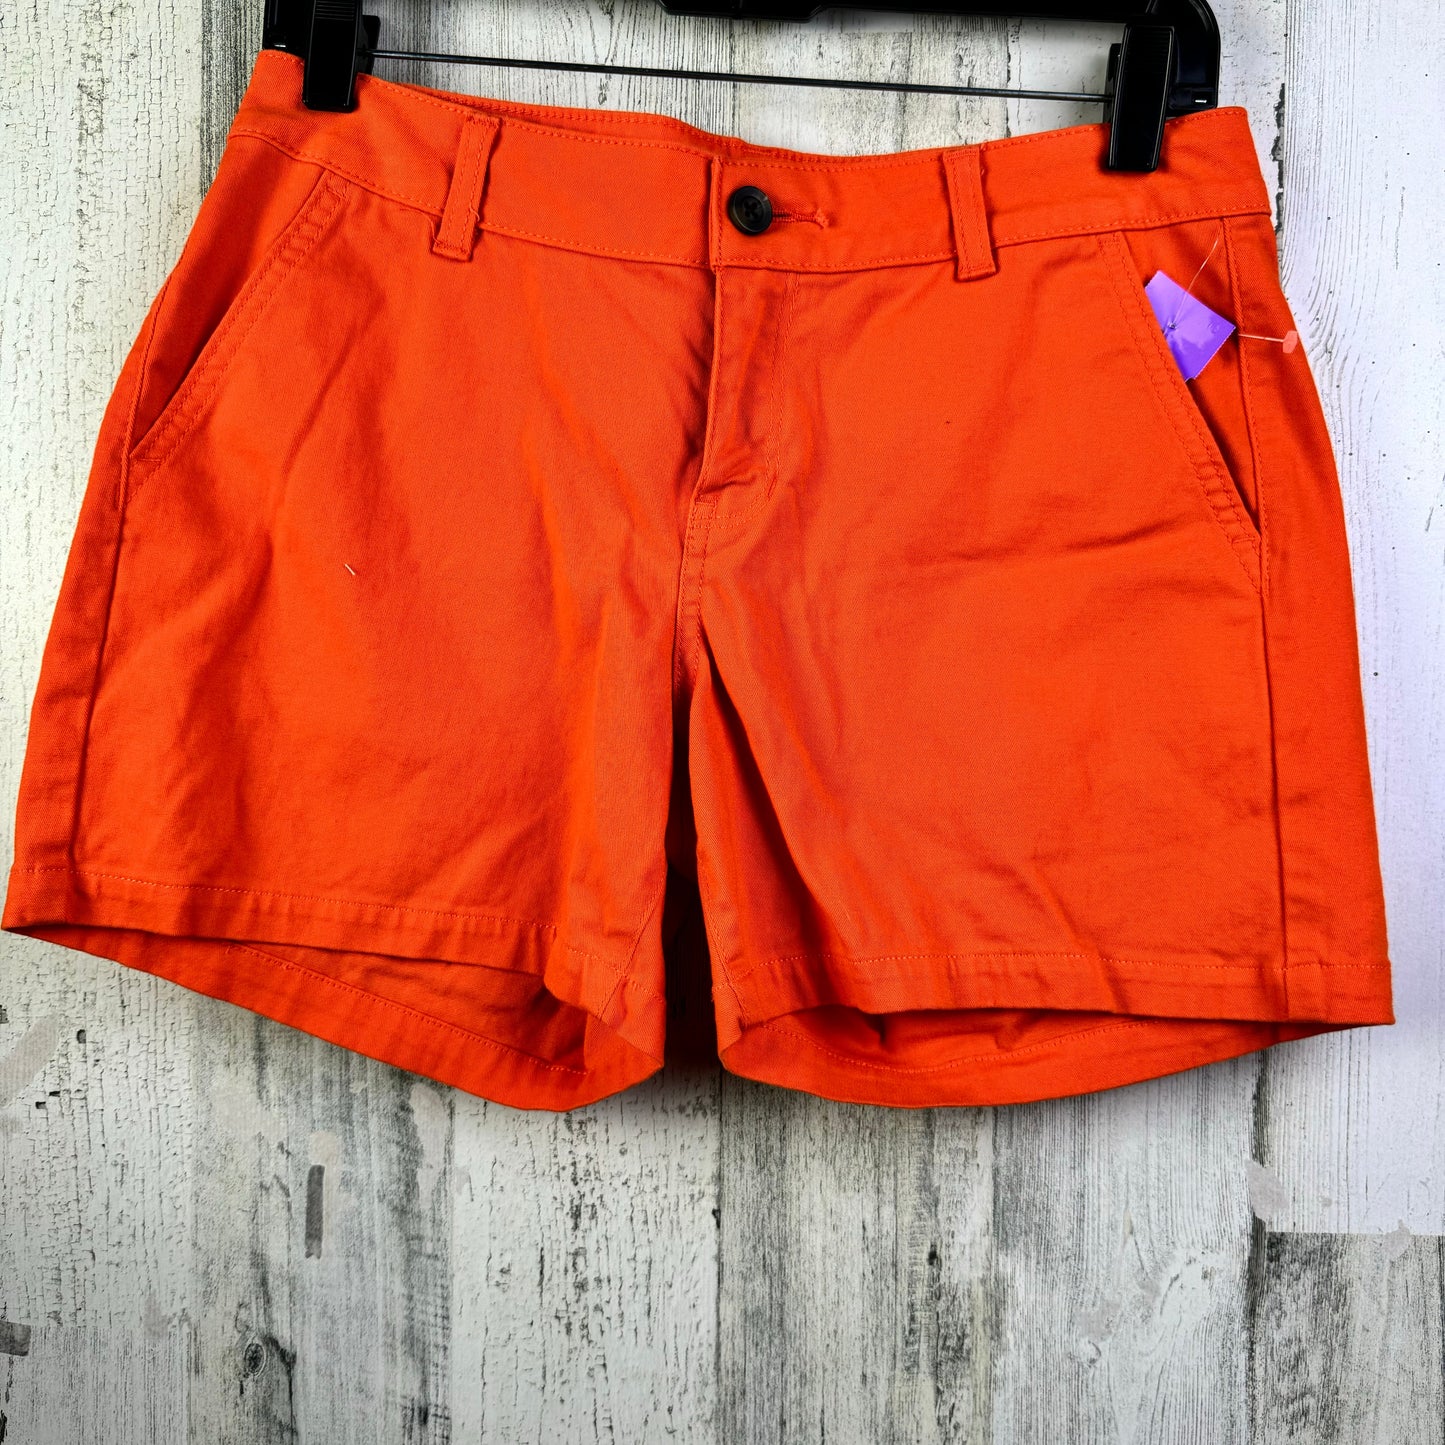 Orange Shorts Ana, Size 4